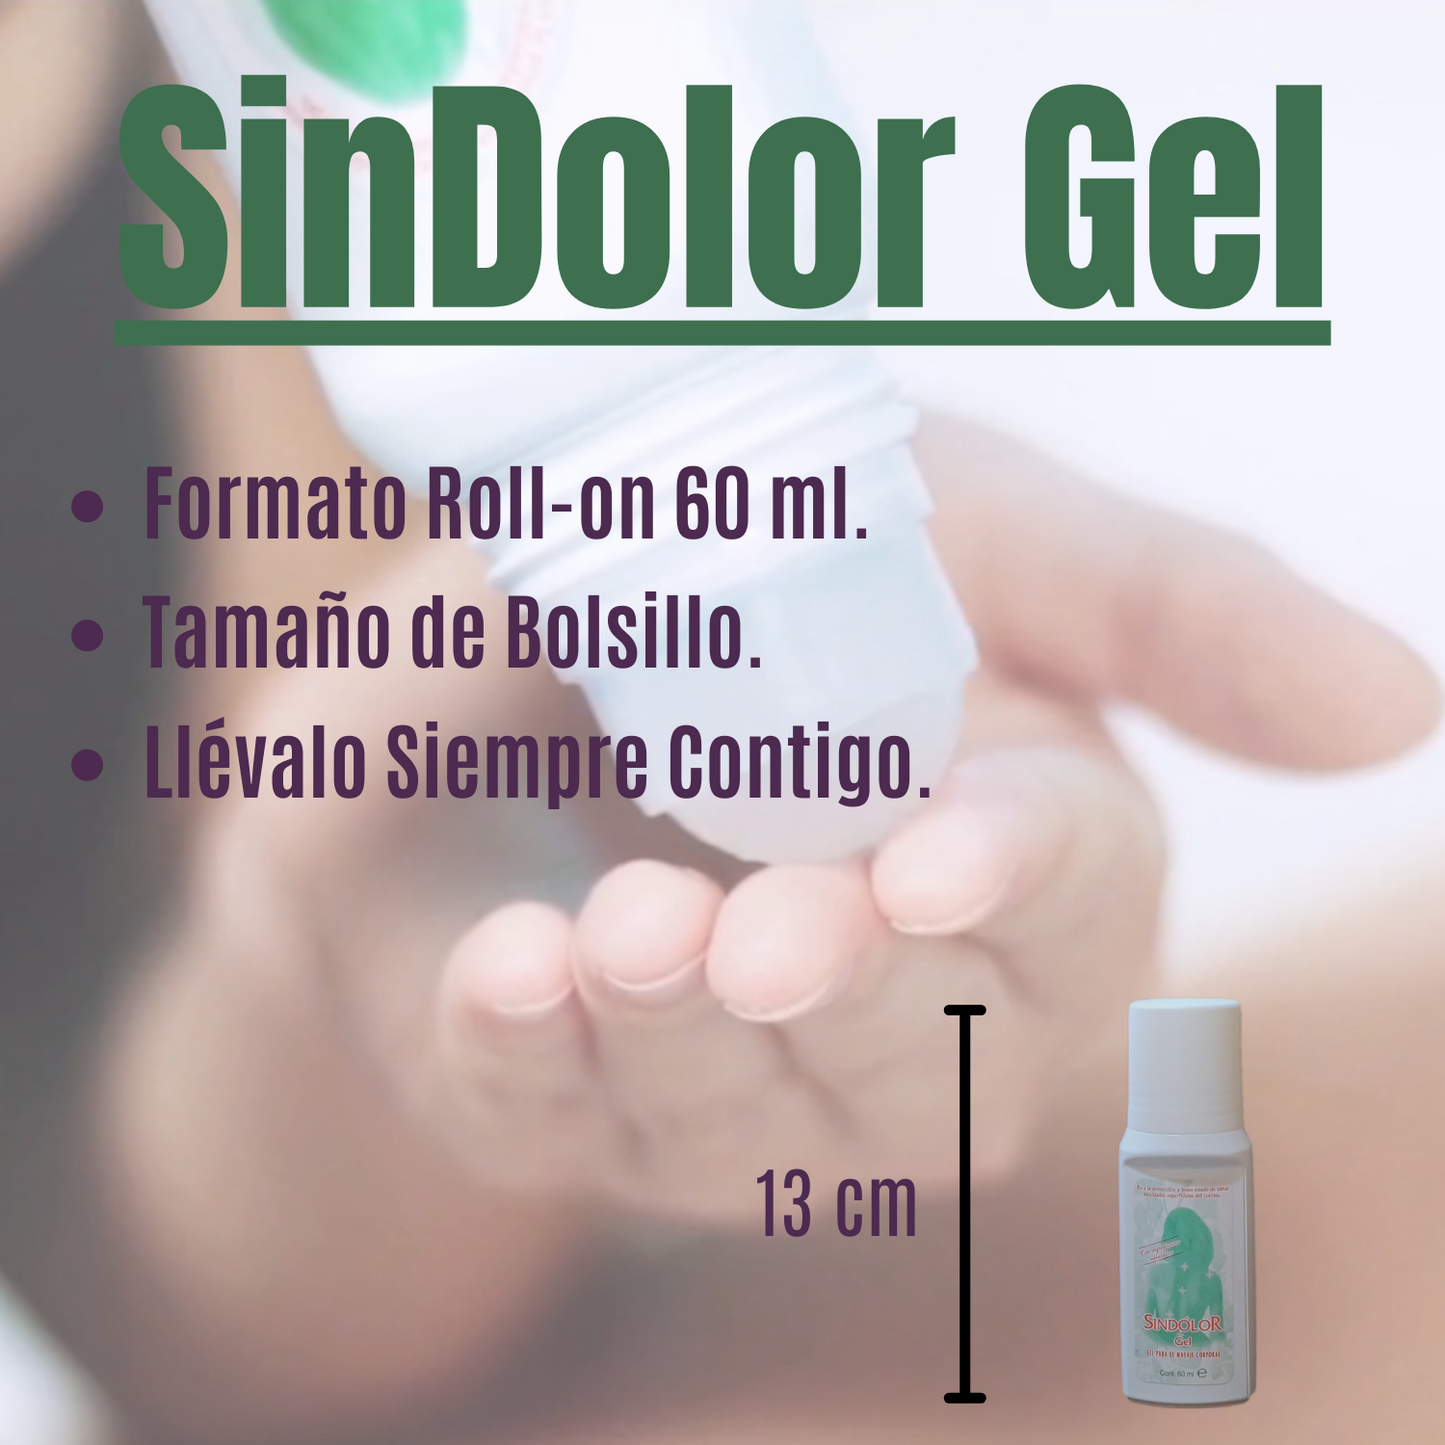 Sindolor Gel RollOn 60 ml